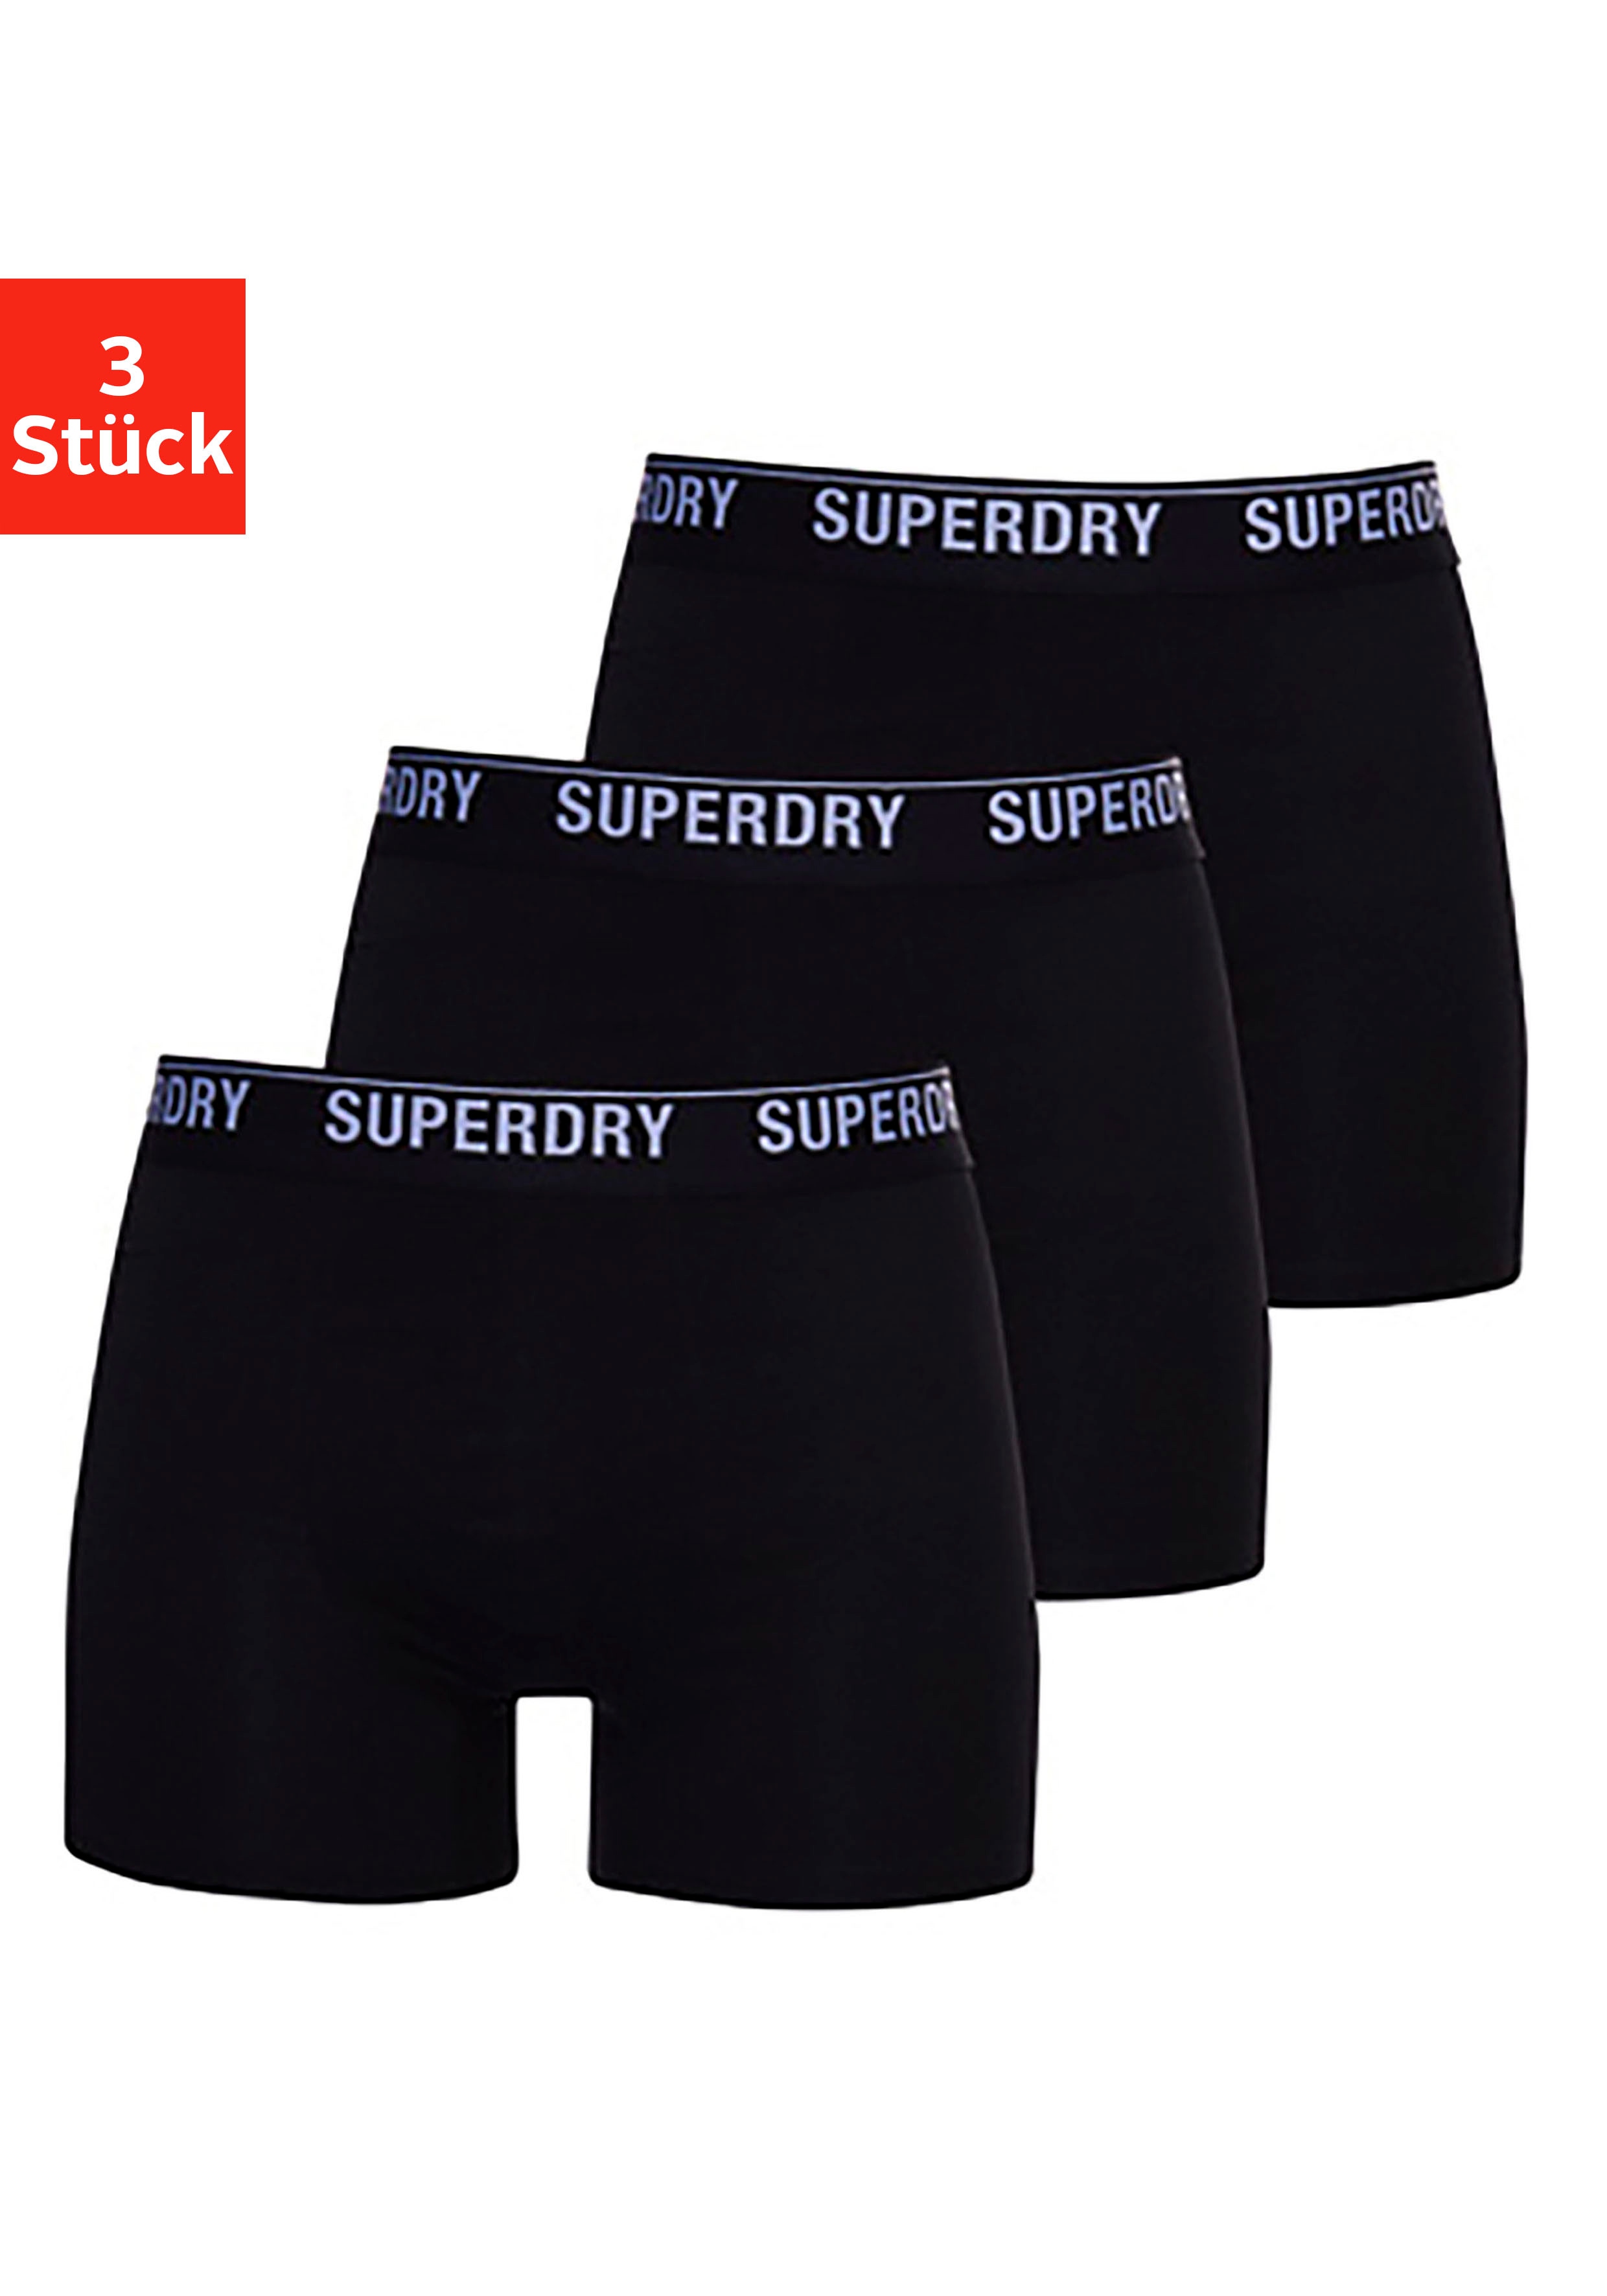 Superdry Mens Multi Triple Pack Boxer Shorts, Black/Black Optic, XX-Large